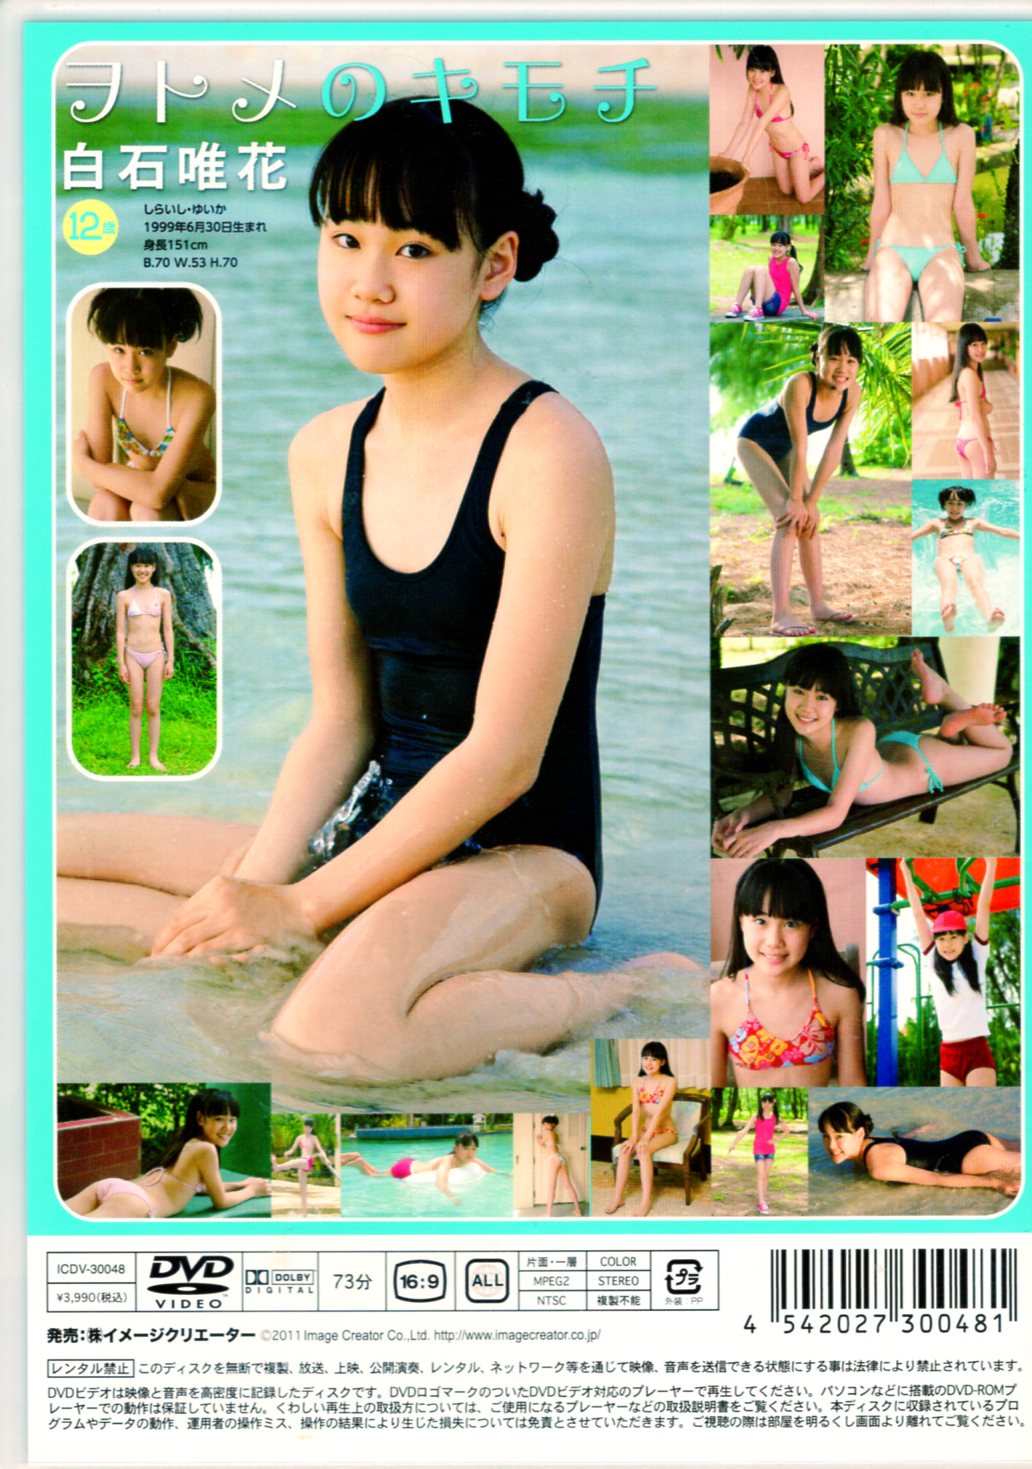 Image Creator (Yika Shiraishi) DVD Wotome no Kimochi | ありある | まんだらけ  MANDARAKE